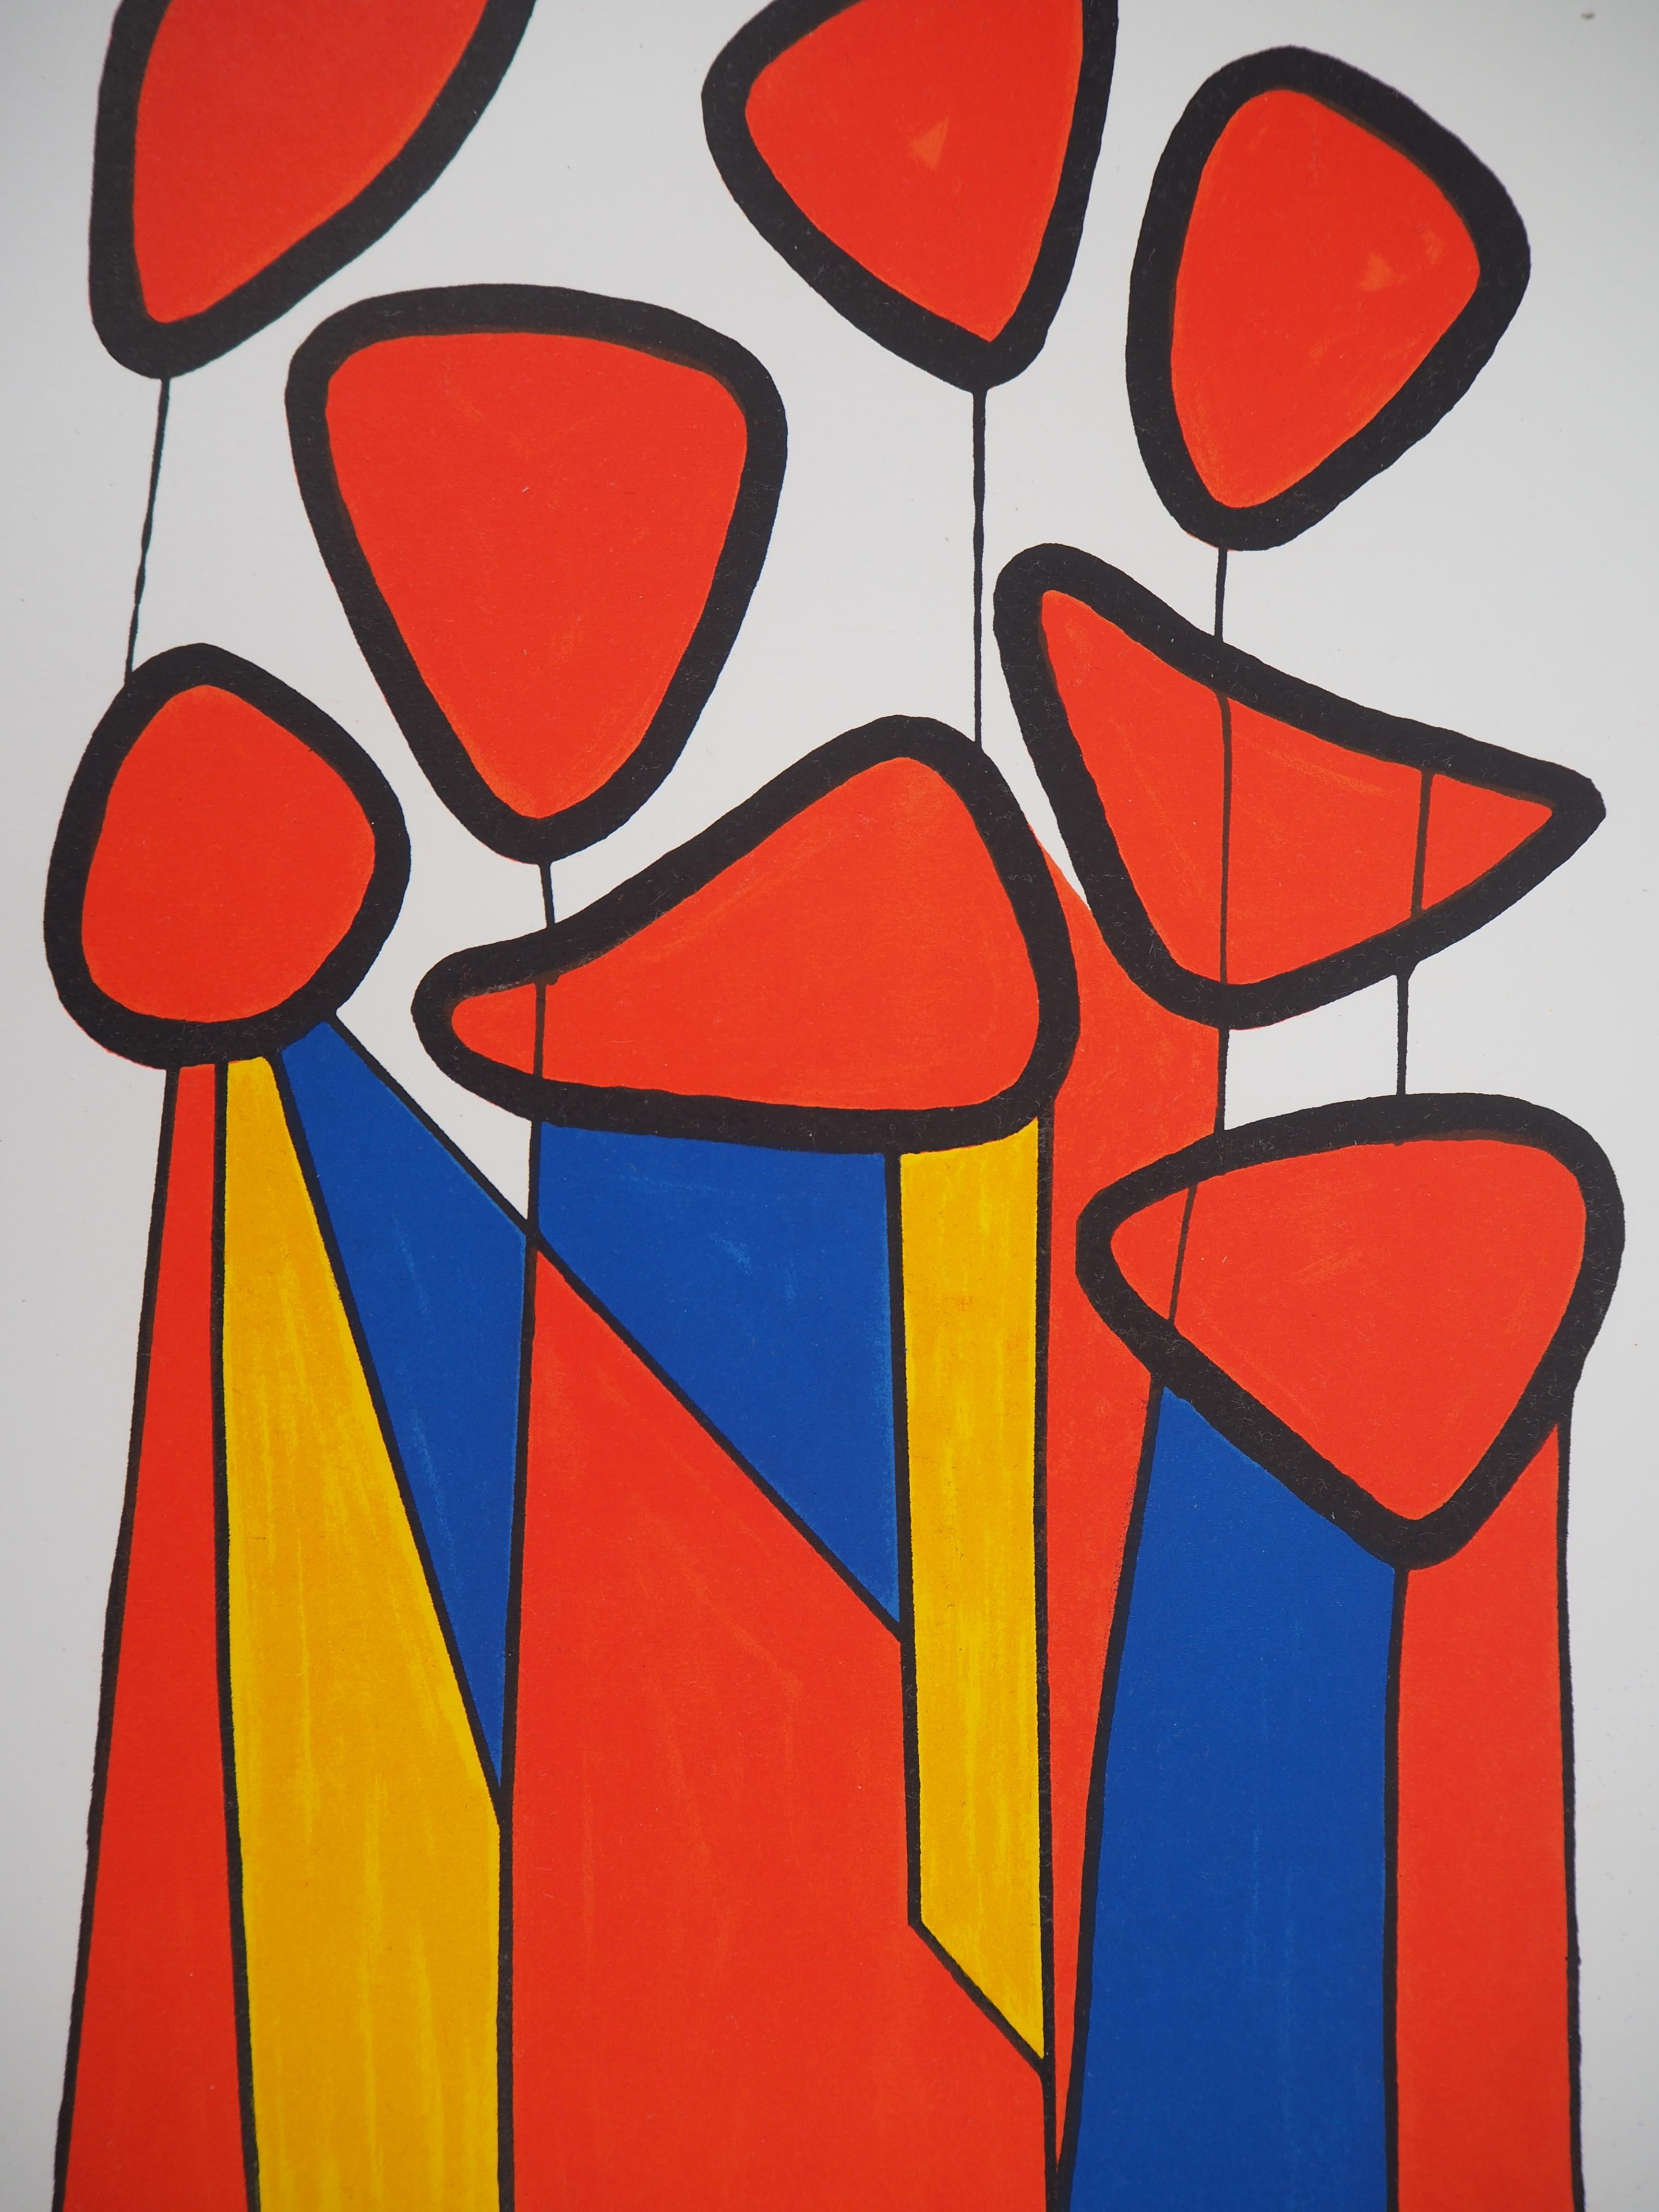 Komposition in Rot, Gelb und Blau - Lithographie - Mourlot, 1972 (Abstrakt), Print, von Alexander Calder